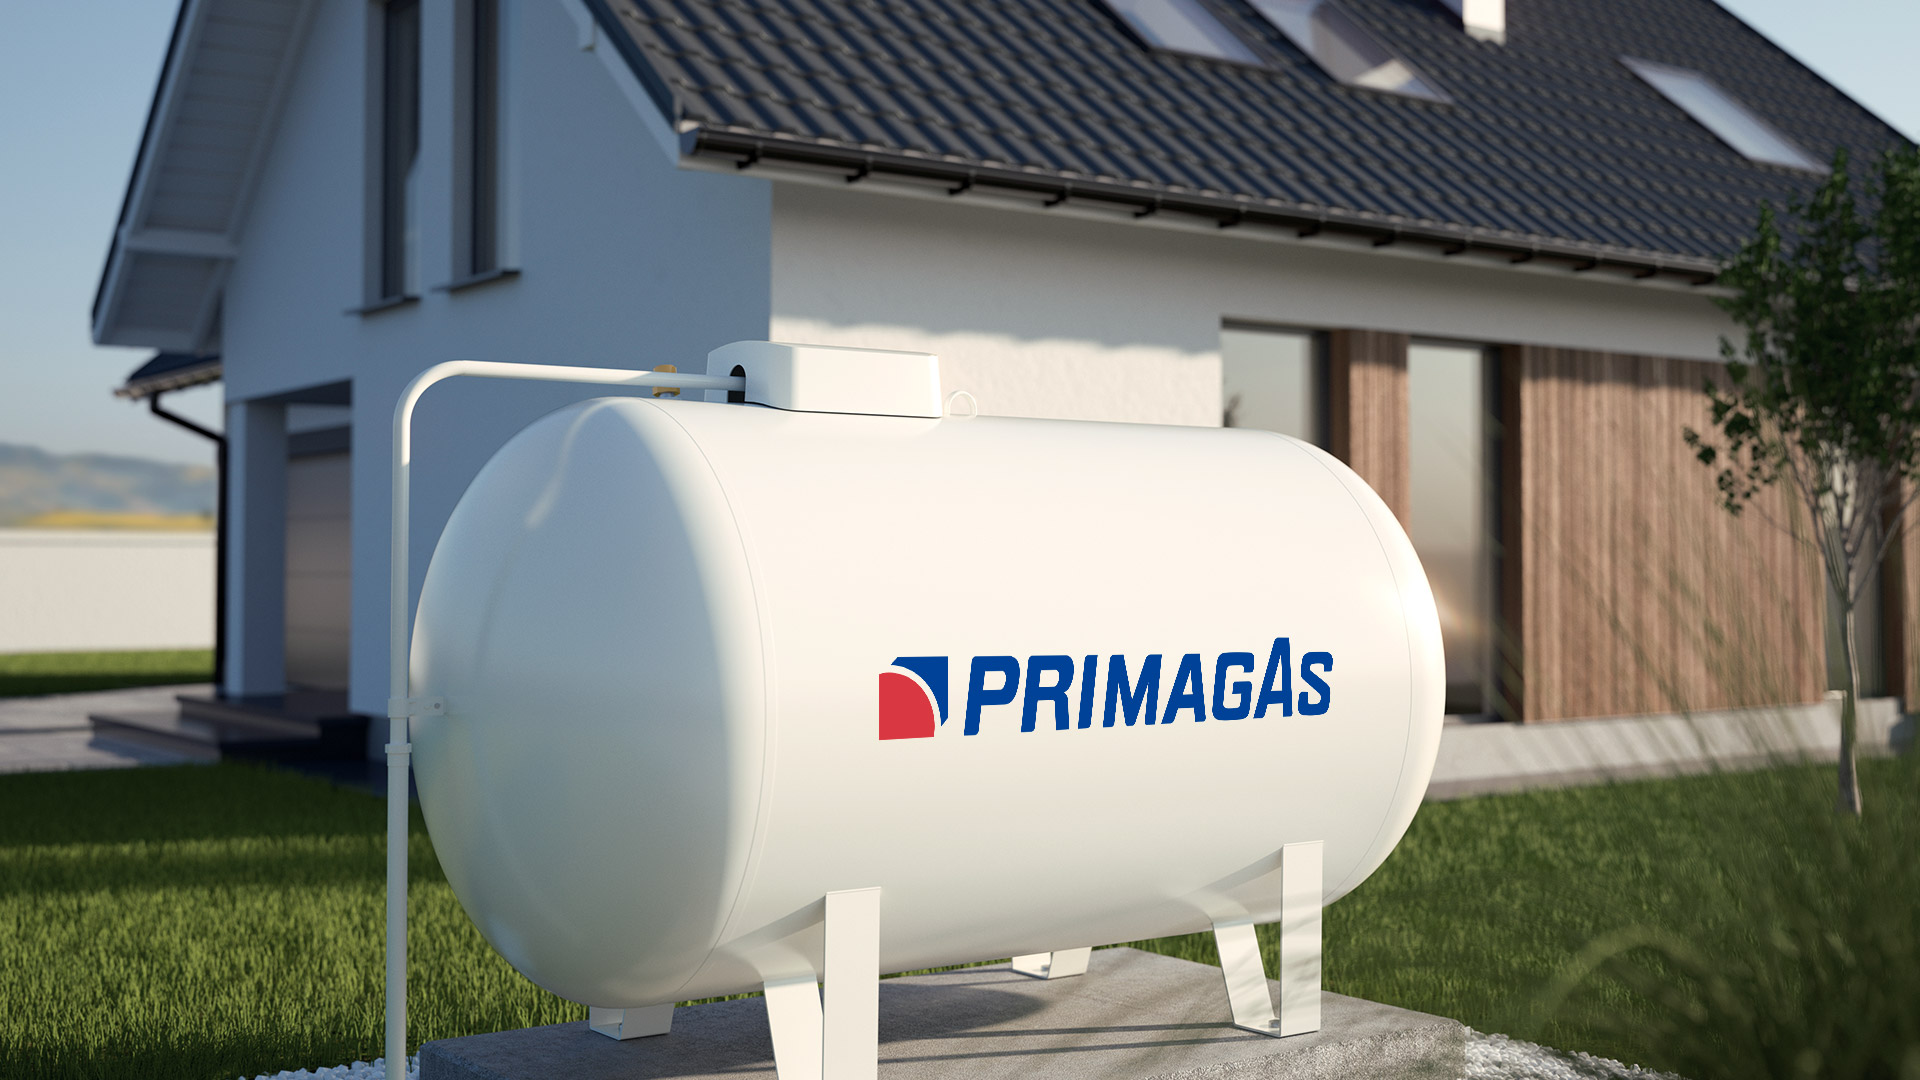 PRIMAGAS - Tankinformationen - Zwei Männer tauschen sich über den Flüssiggastank aus